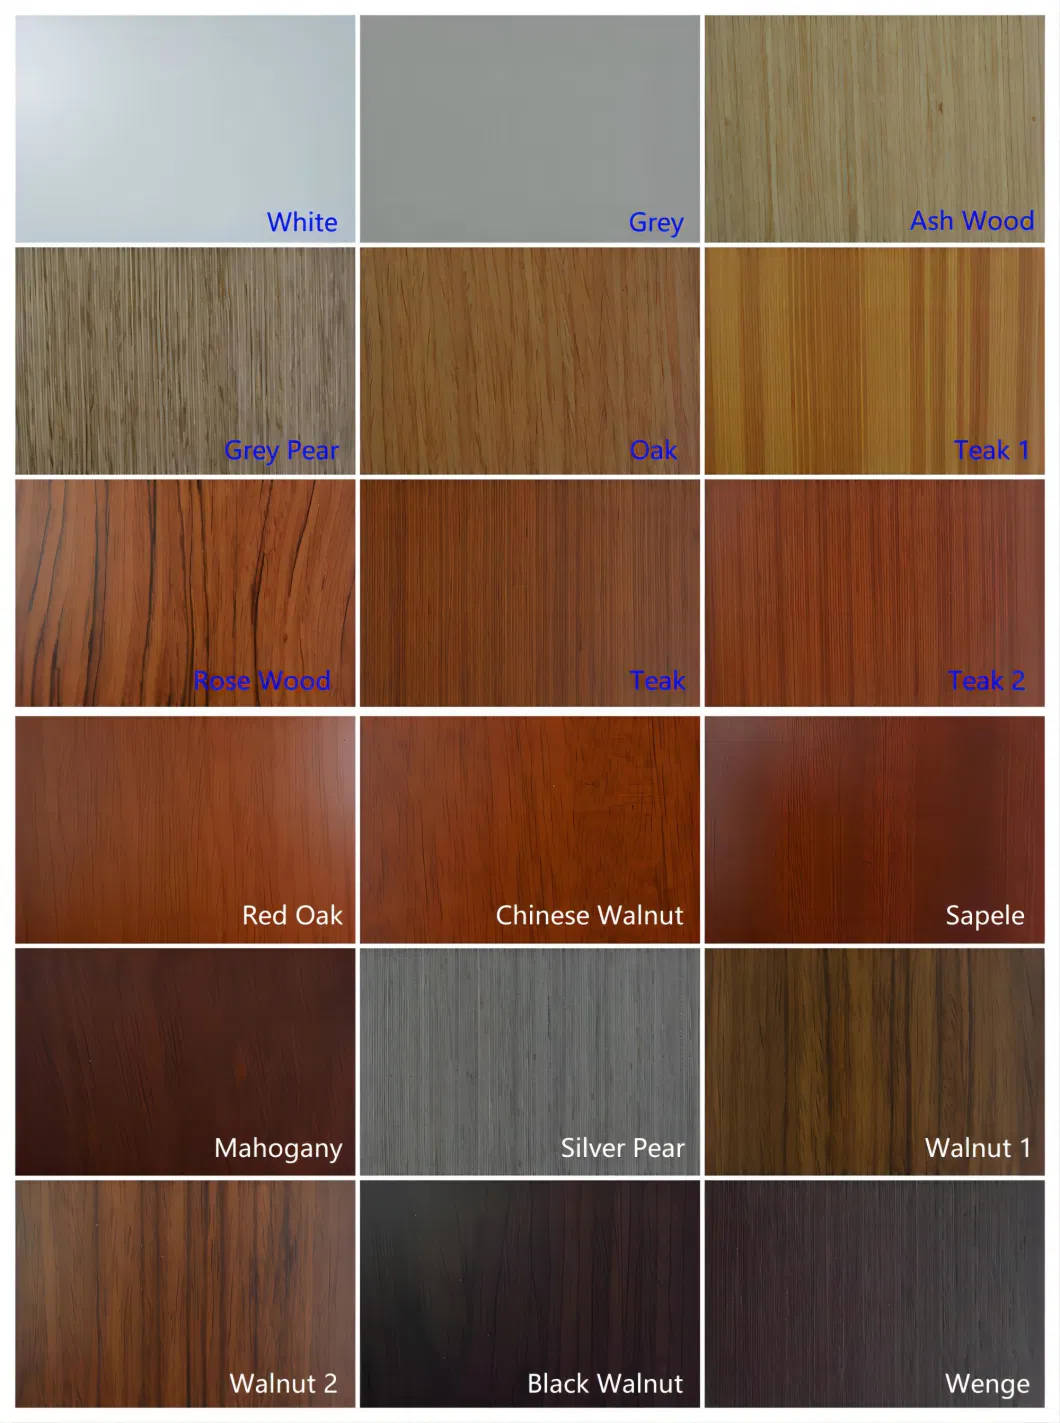 China Door Factory Wholesale Price Waterproof Wooden White Oak Painting Door